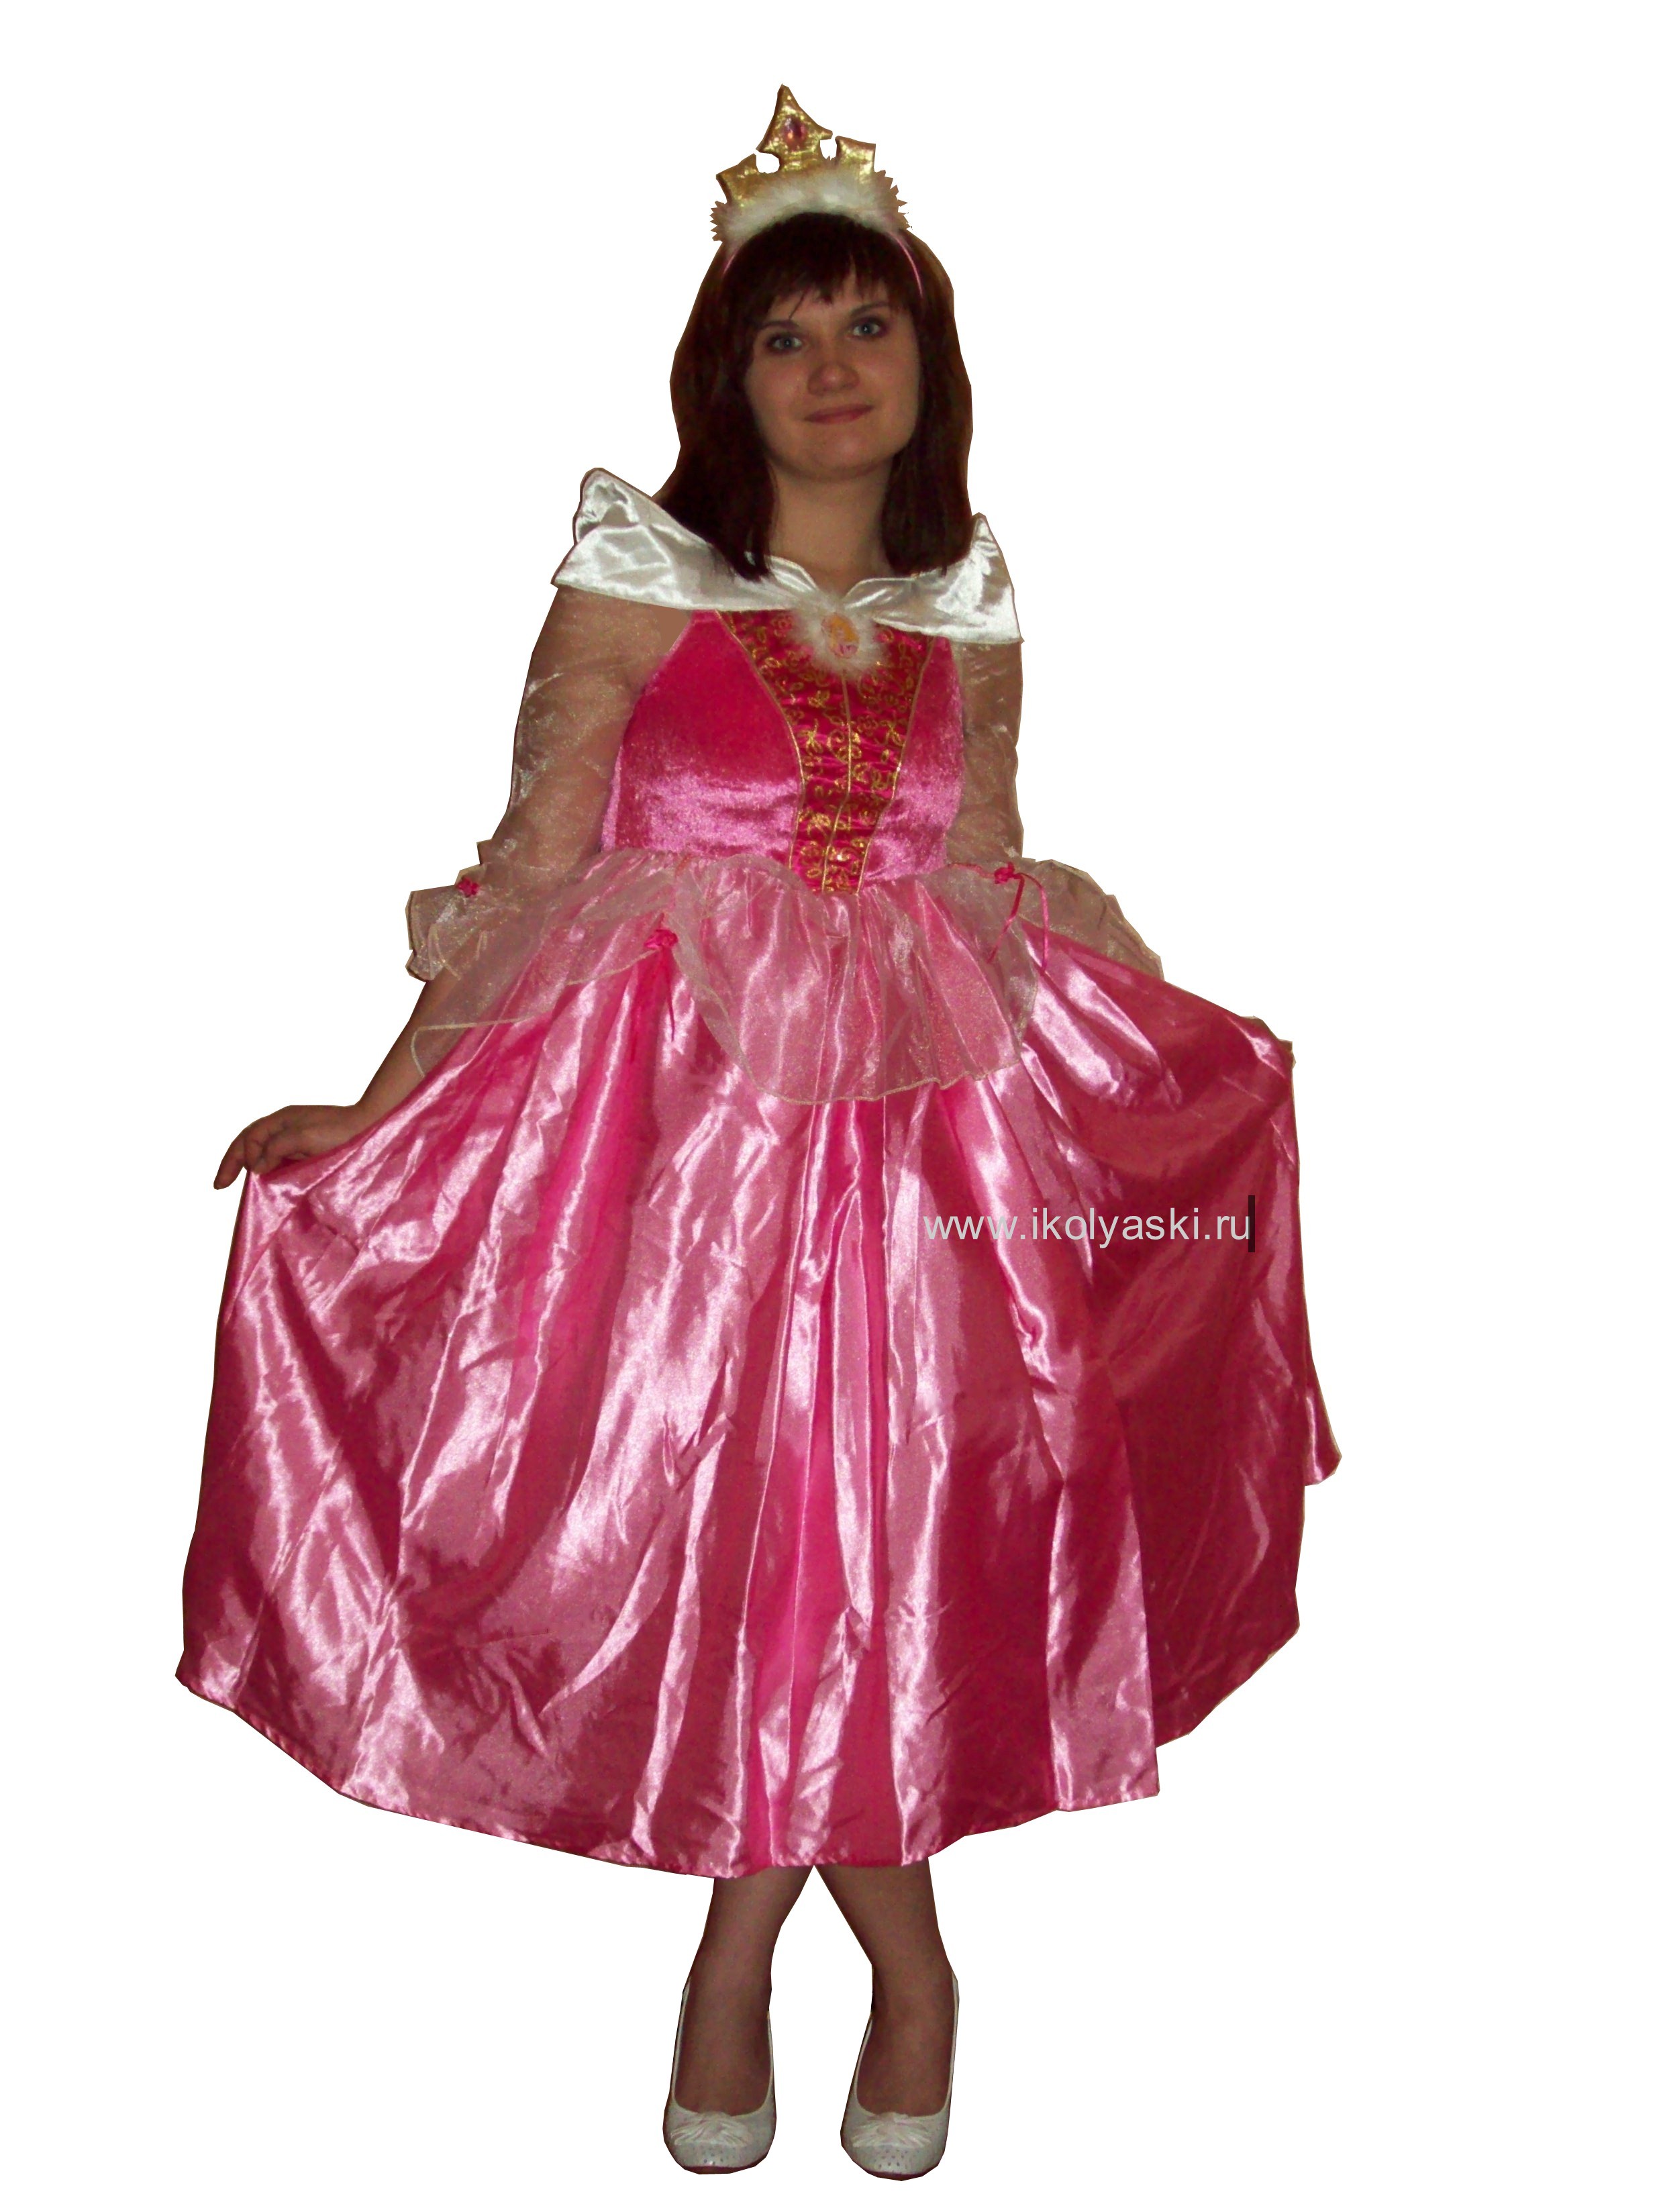 Детский карнавальный костюм Спящая красавица , бальное платье принцессы Авроры из мультфильма 